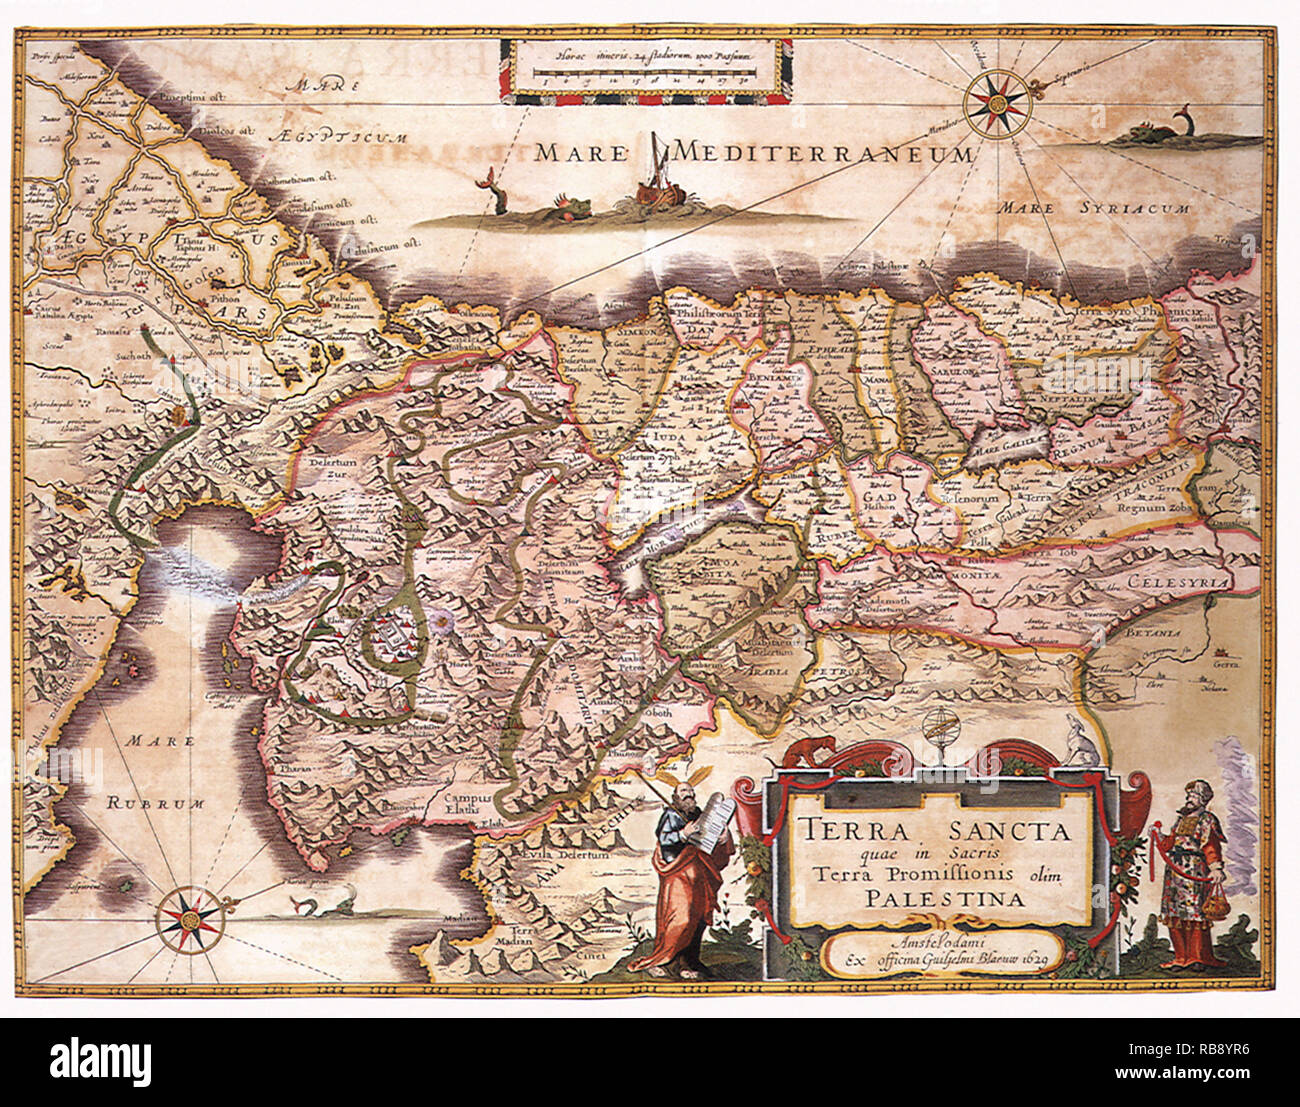 Mappa della Terra Santa e i percorsi 1662 Foto Stock